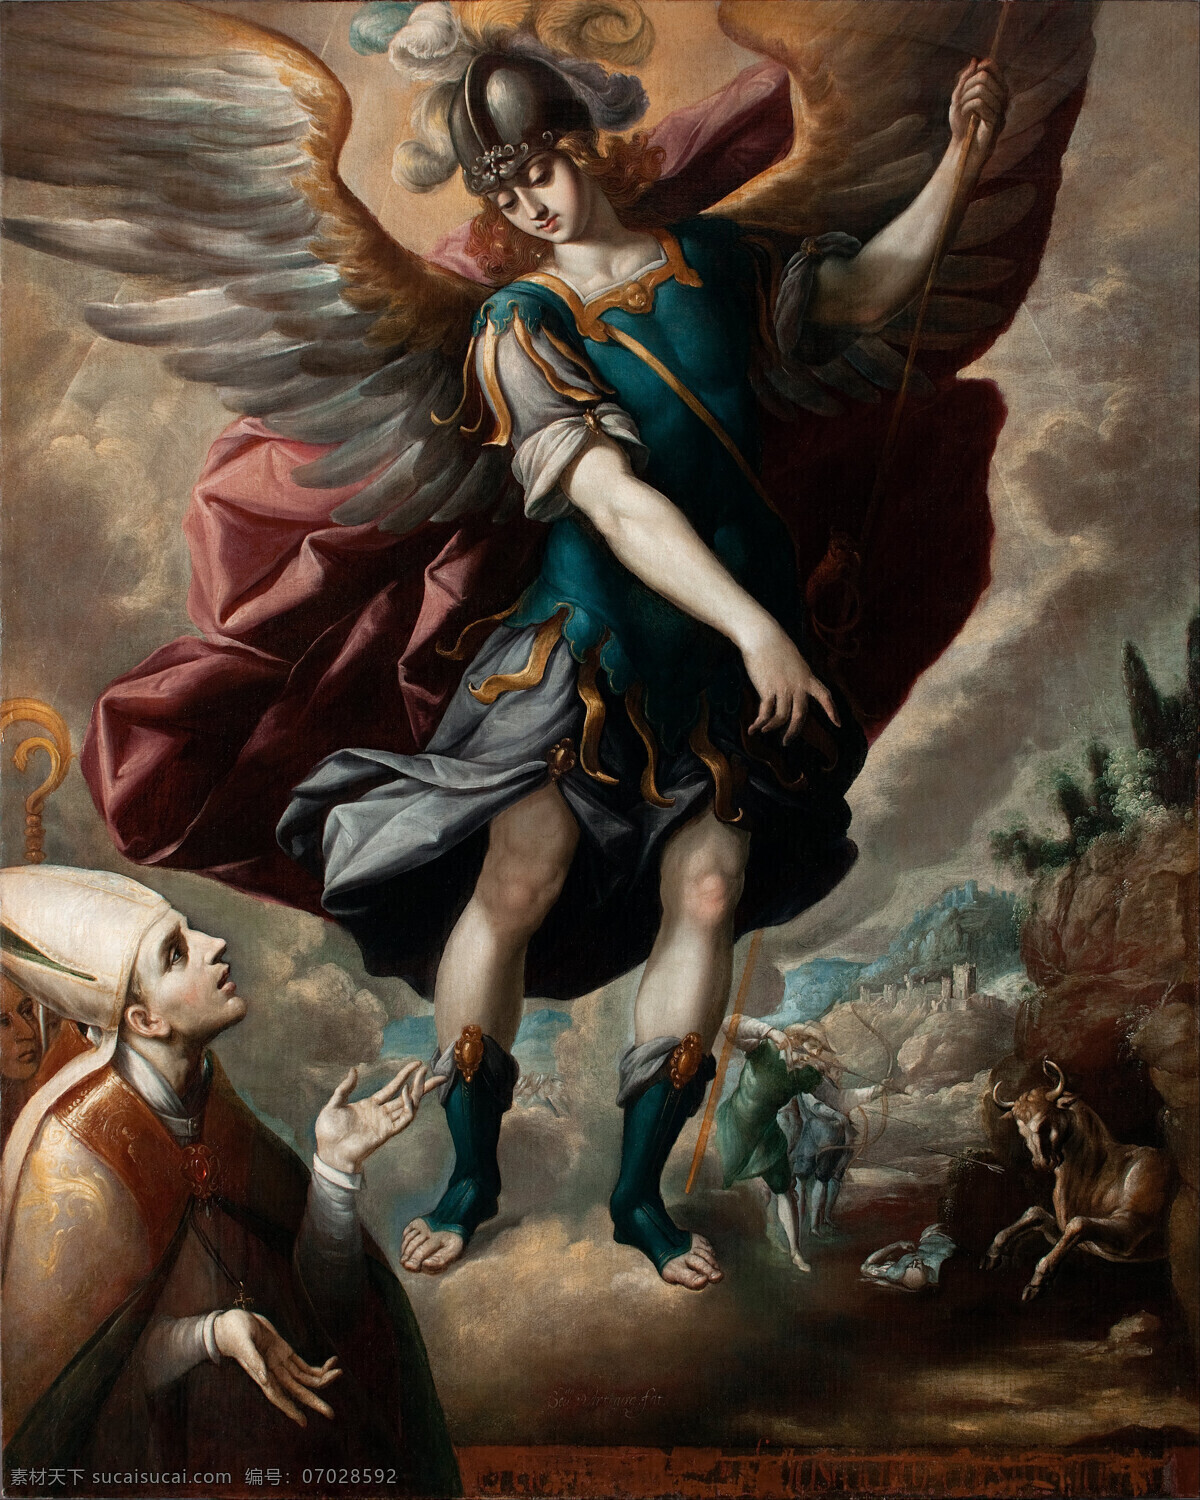 古典油画 绘画书法 文化艺术 油画 宗教油画 圣 迈克尔 徙 设计素材 模板下载 塞巴斯蒂安 洛佩斯 作品 大天使 降临人间